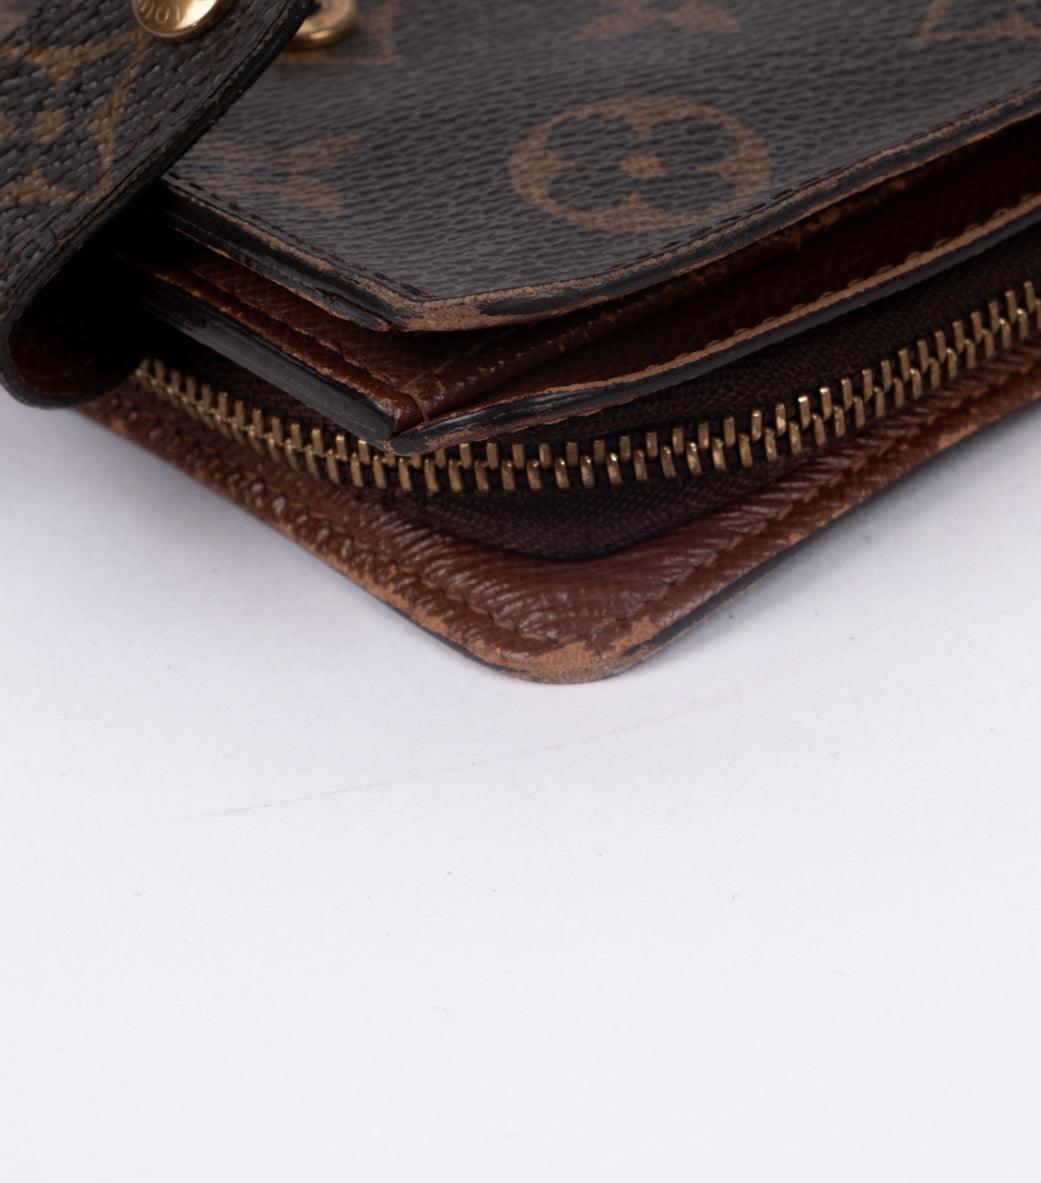 Monogram Compact Zip Wallet - Volver